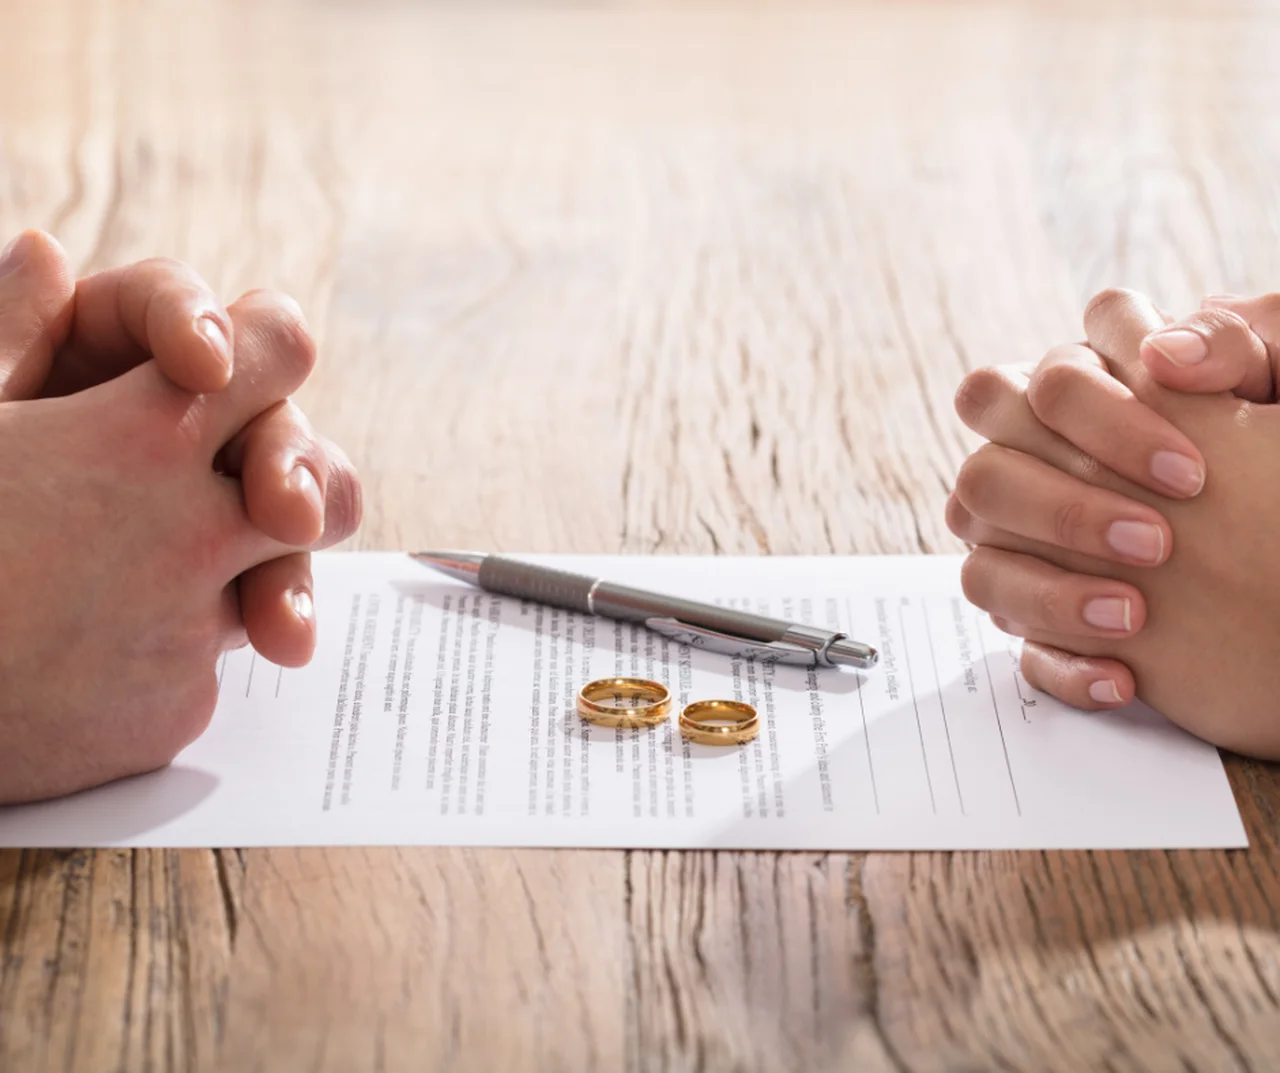 Odwołanie ślubu: Czy można liczyć na odszkodowanie? Co z pierścionkiem zaręczynowym?